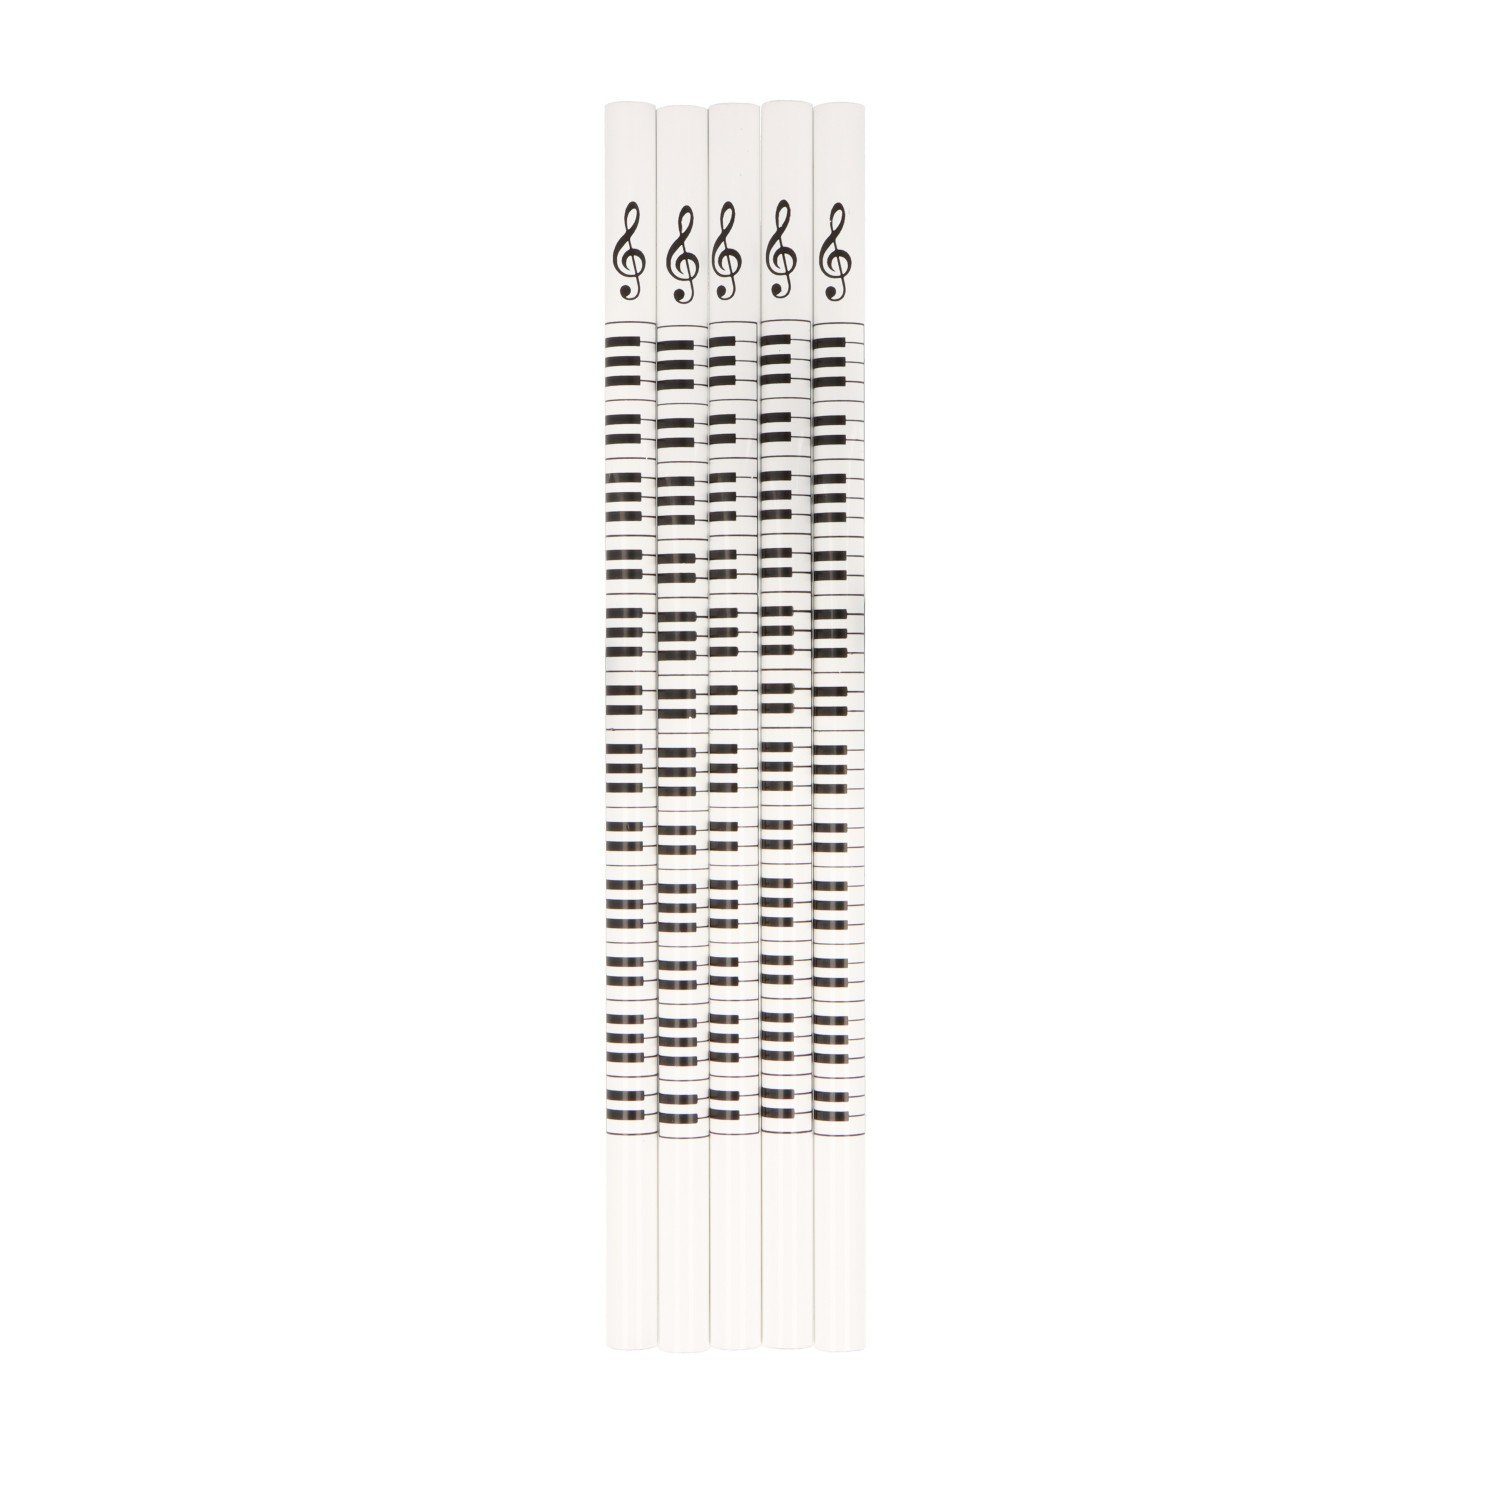 Musikboutique Bleistift, (5-tlg), mit Keyboard und Notenschlüssel Motiv, Farbe weiß, 5 Stück Tastatur